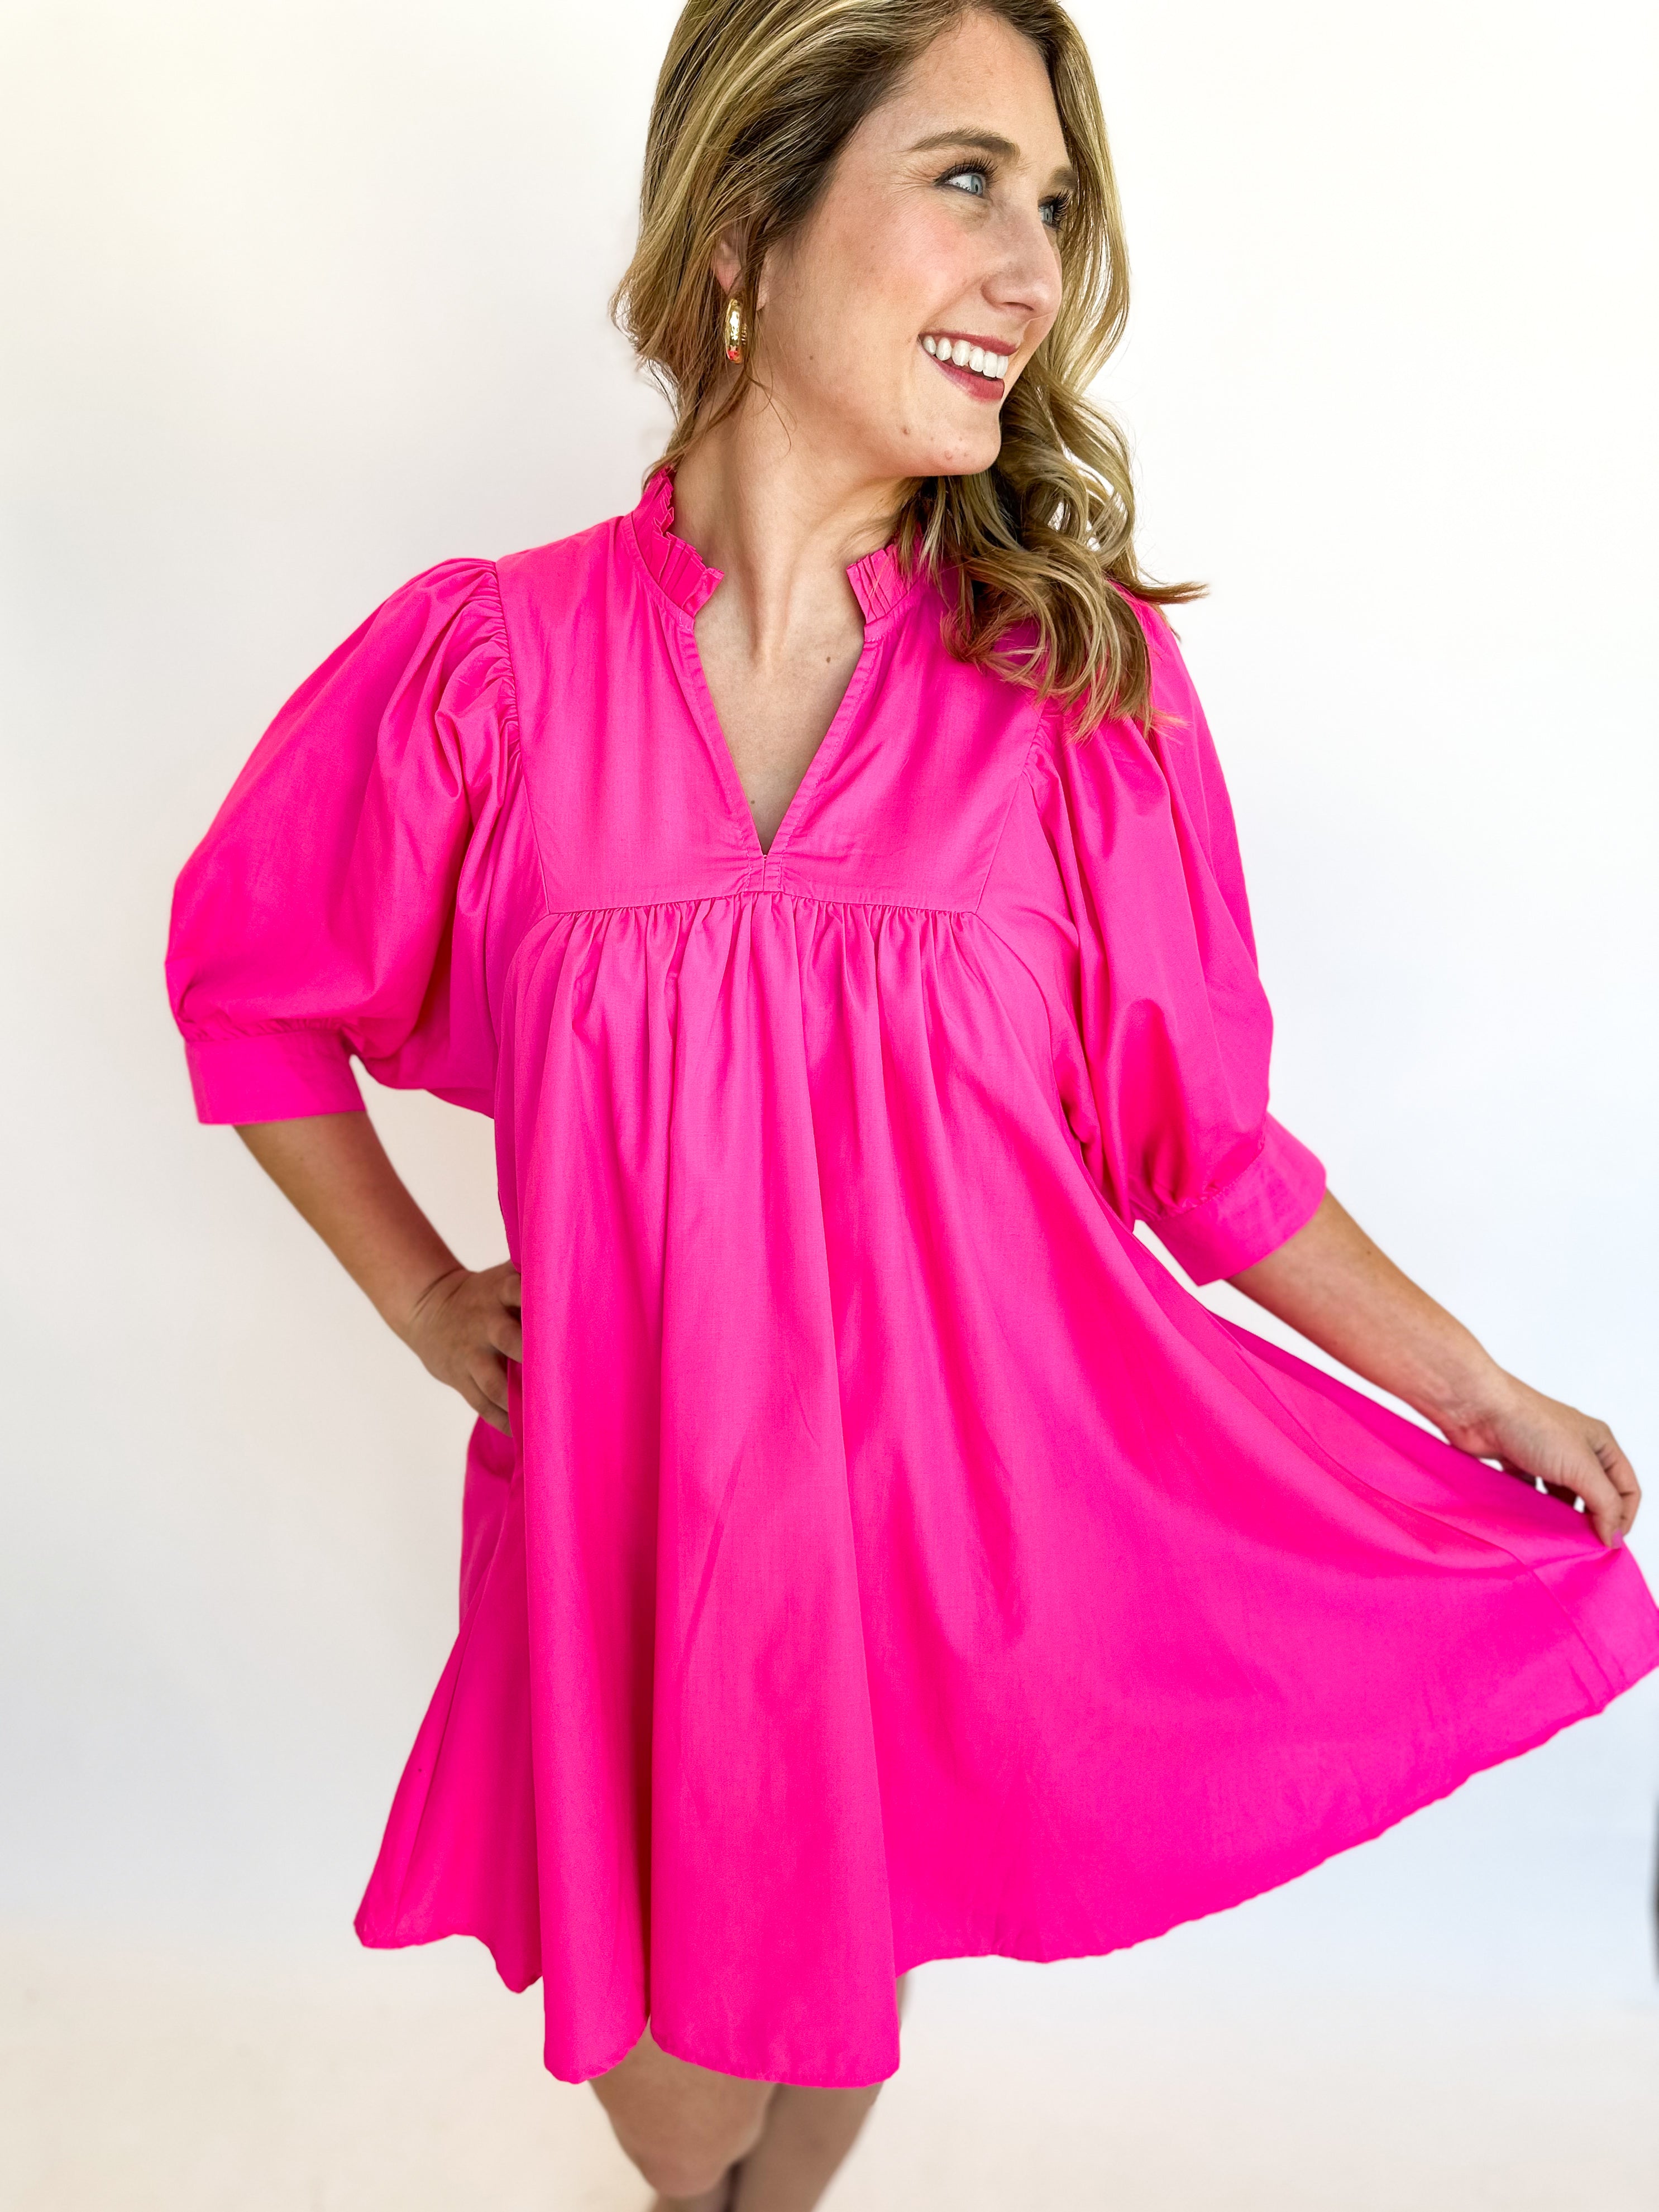 Hot Pink Prep Mini Dress-510 Mini-ENTRO-July & June Women's Fashion Boutique Located in San Antonio, Texas